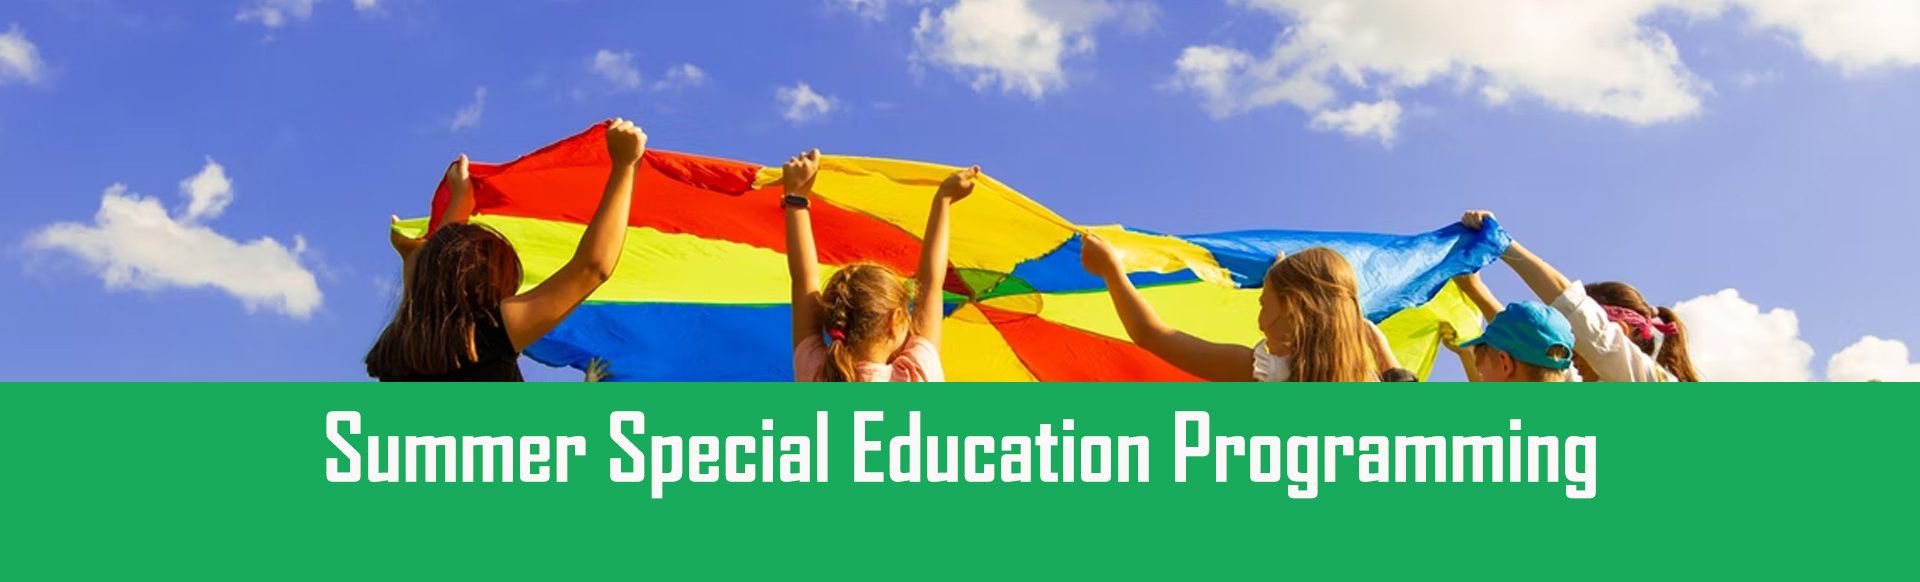 Summer Special Education Programming